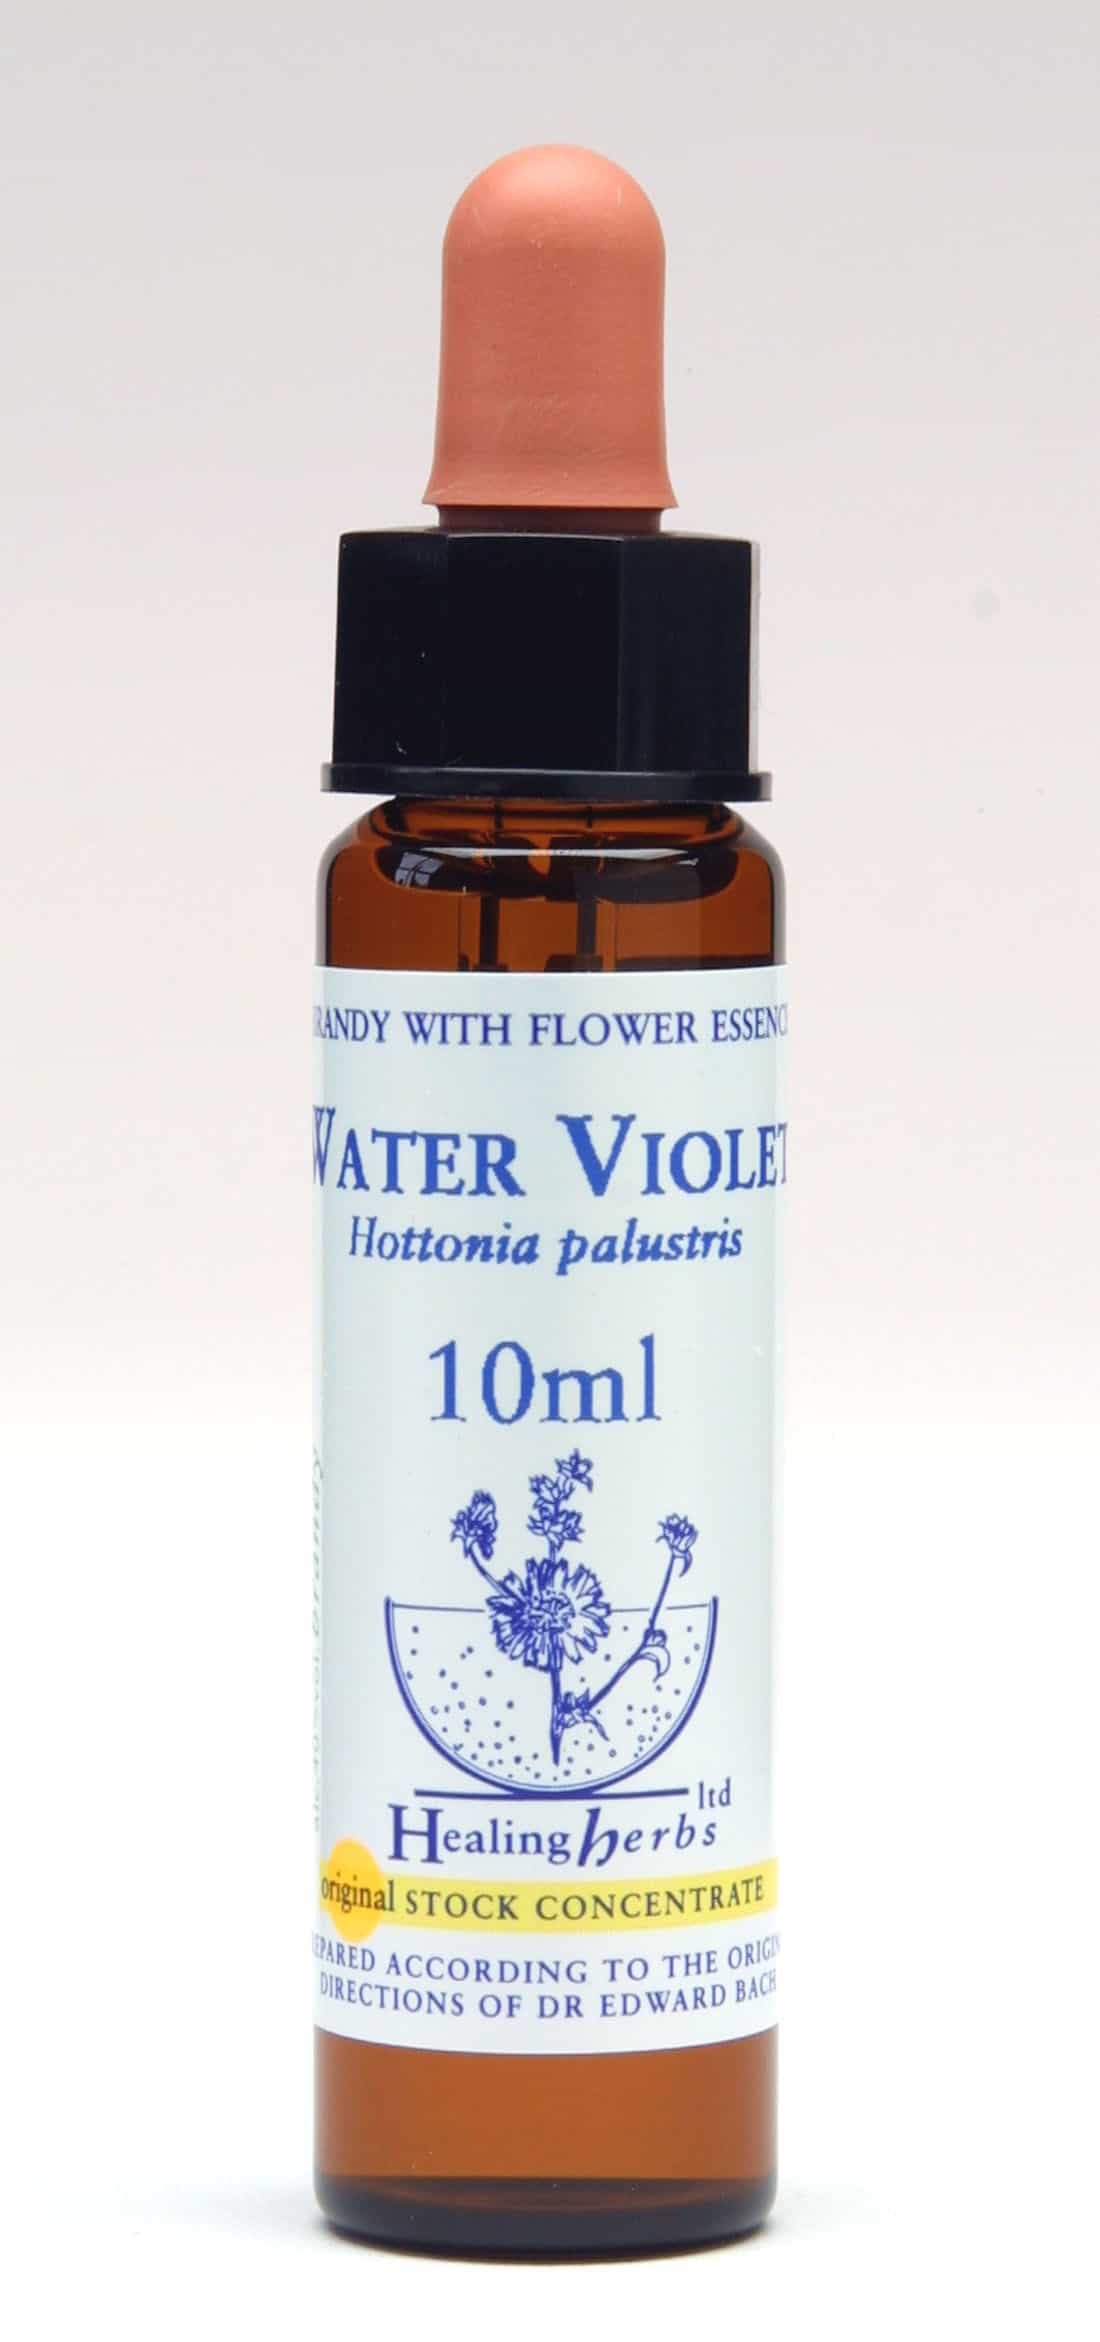 Water Violet Flor de Bach Healing Herbs